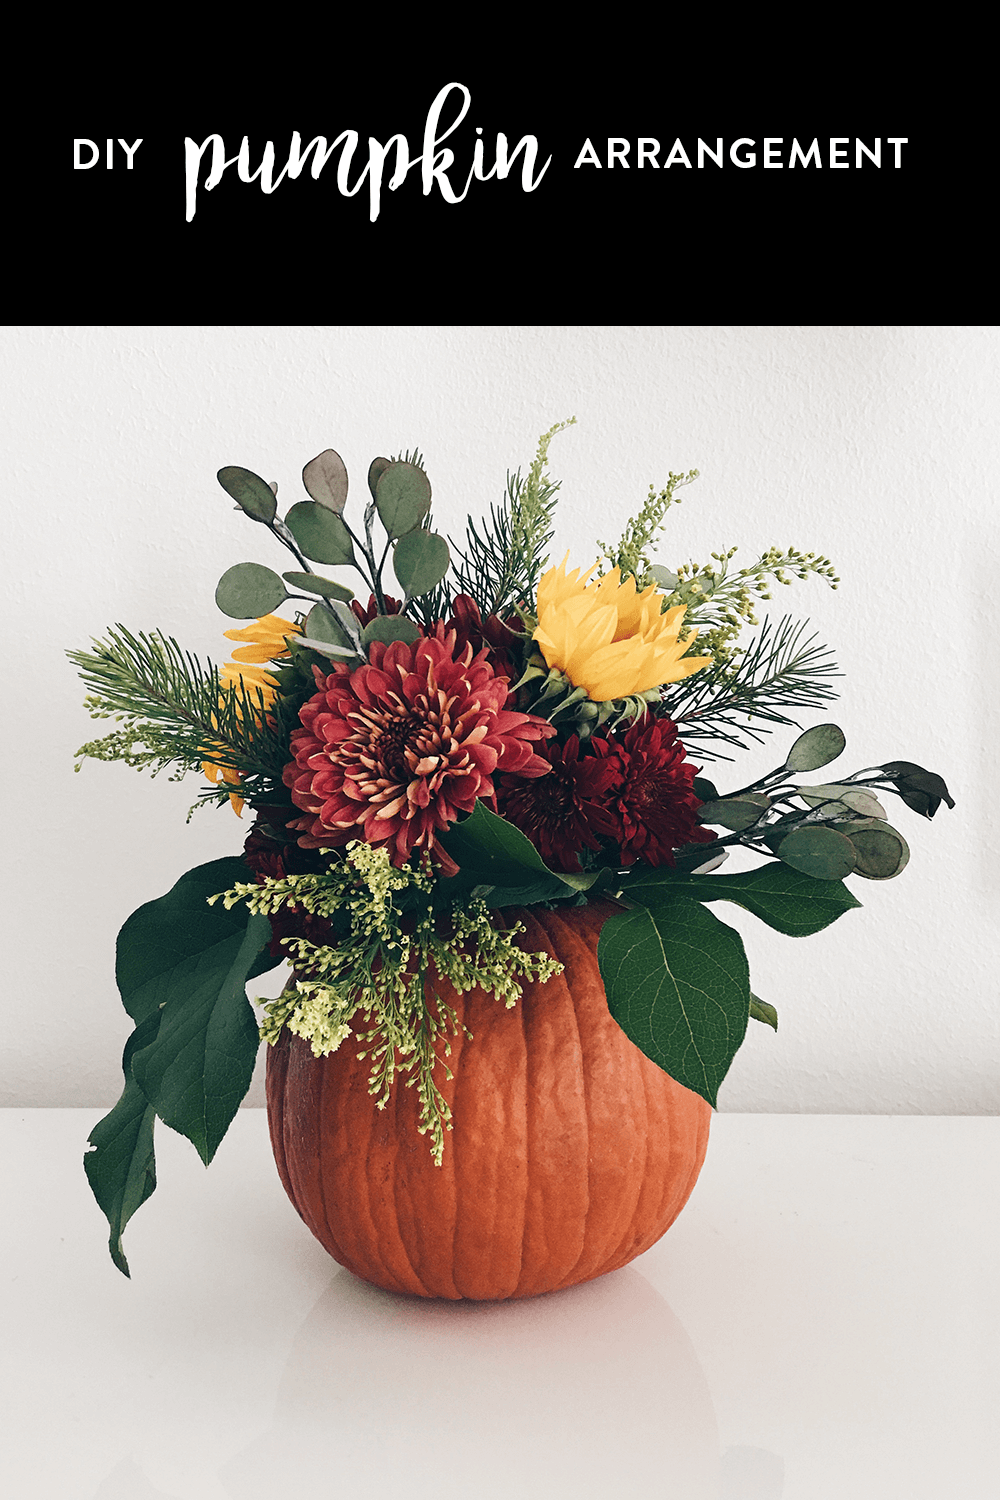 DIY pumpkin flower arrangement, how to make a pumpkin flower arrangement, DIY pumpkin vase flowers